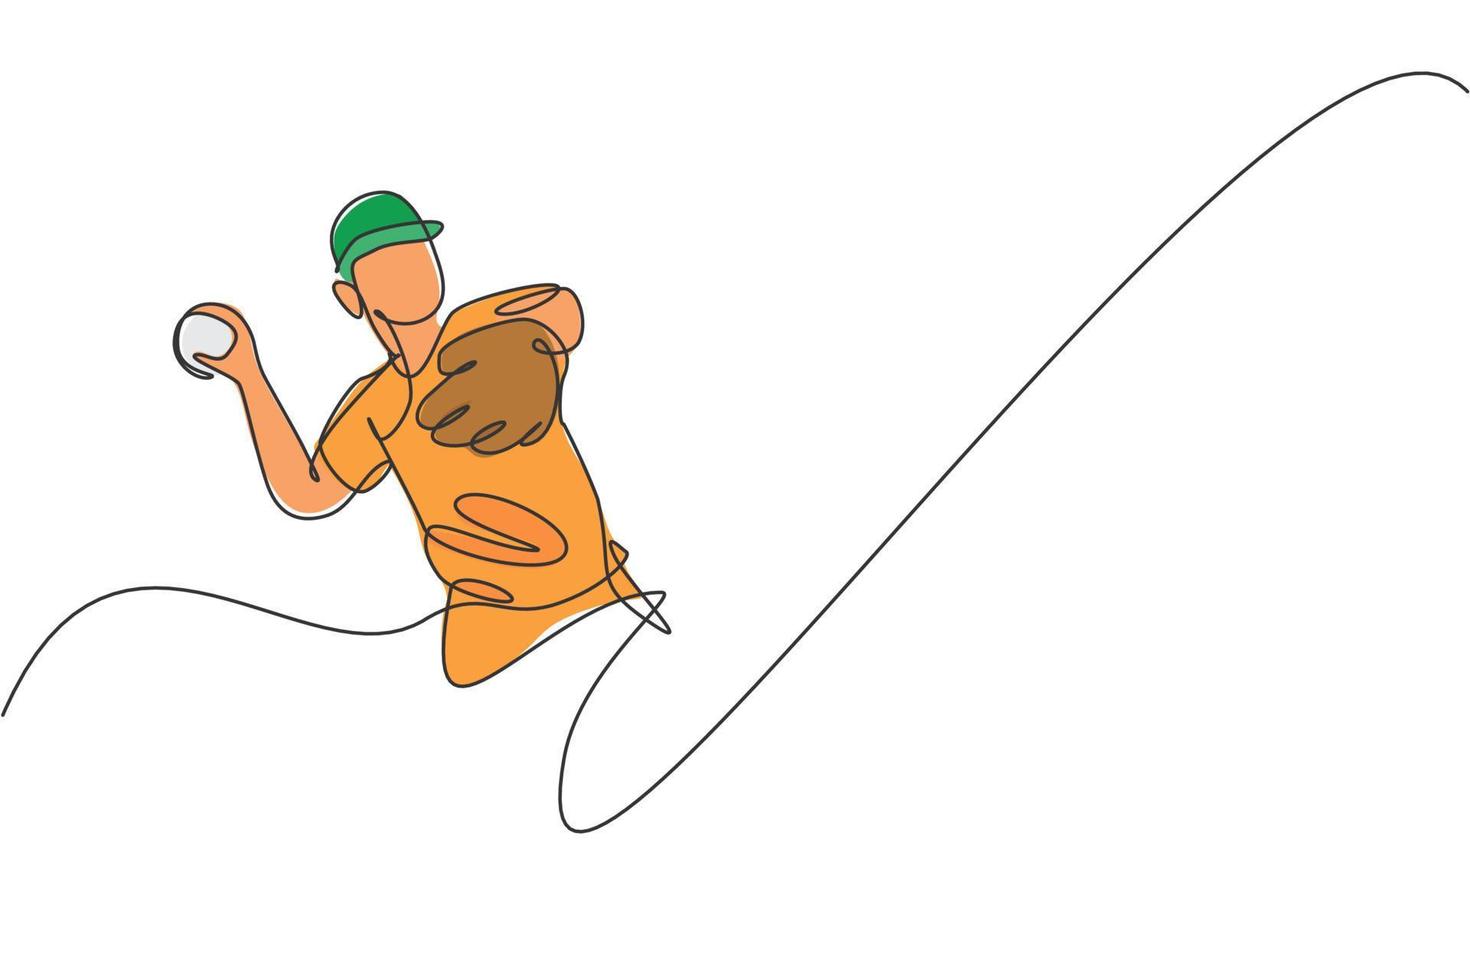 uma única linha de desenho jovem jogador de beisebol enérgico jogar a ilustração vetorial gráfico de bola de velocidade. conceito de treinamento esportivo. design moderno de desenho de linha contínua para banner de torneio de beisebol vetor